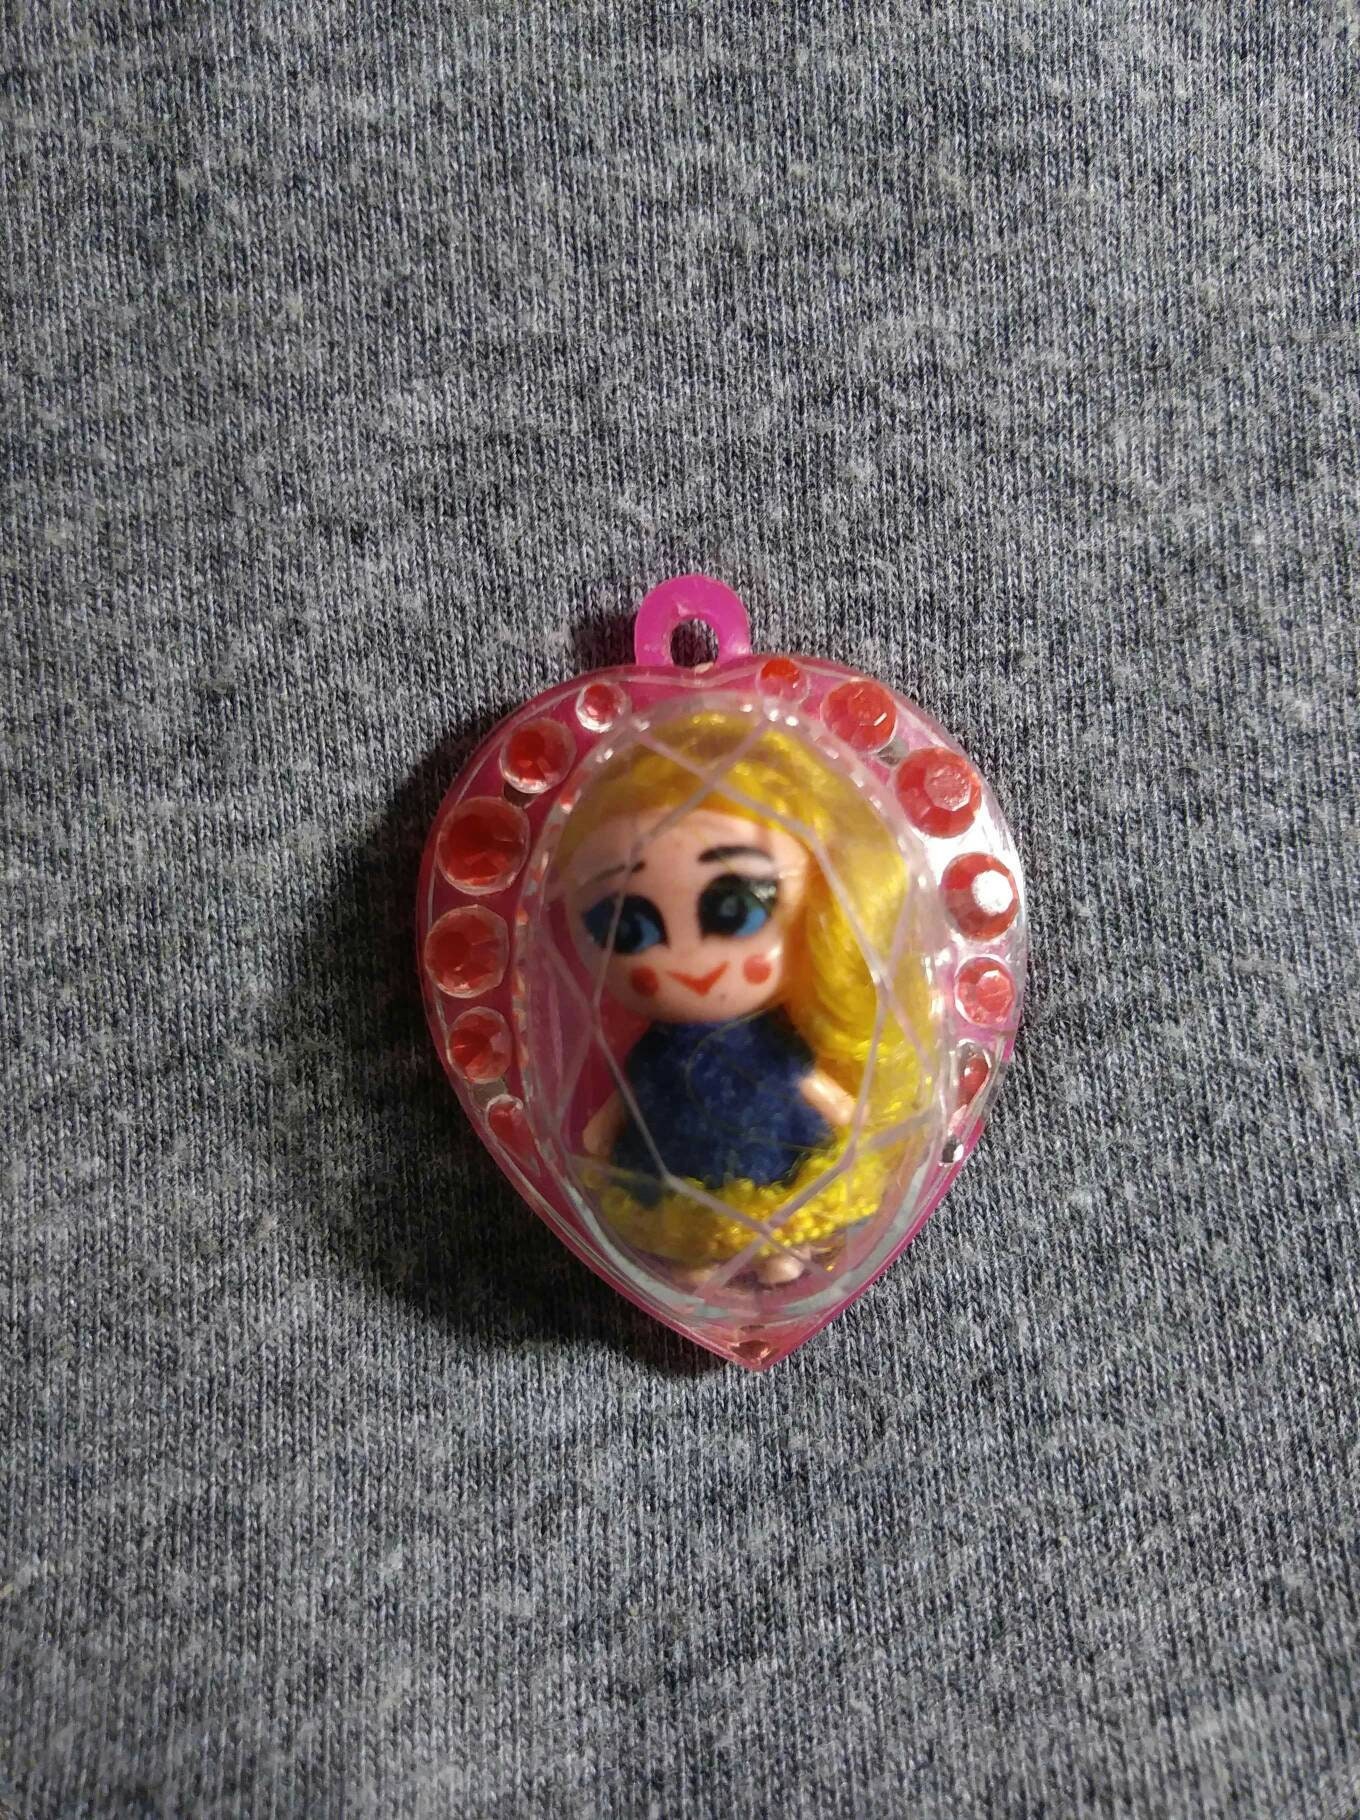 Liddle Kiddles Jewelry by Mattel Inc 1967 Heart Locket doll